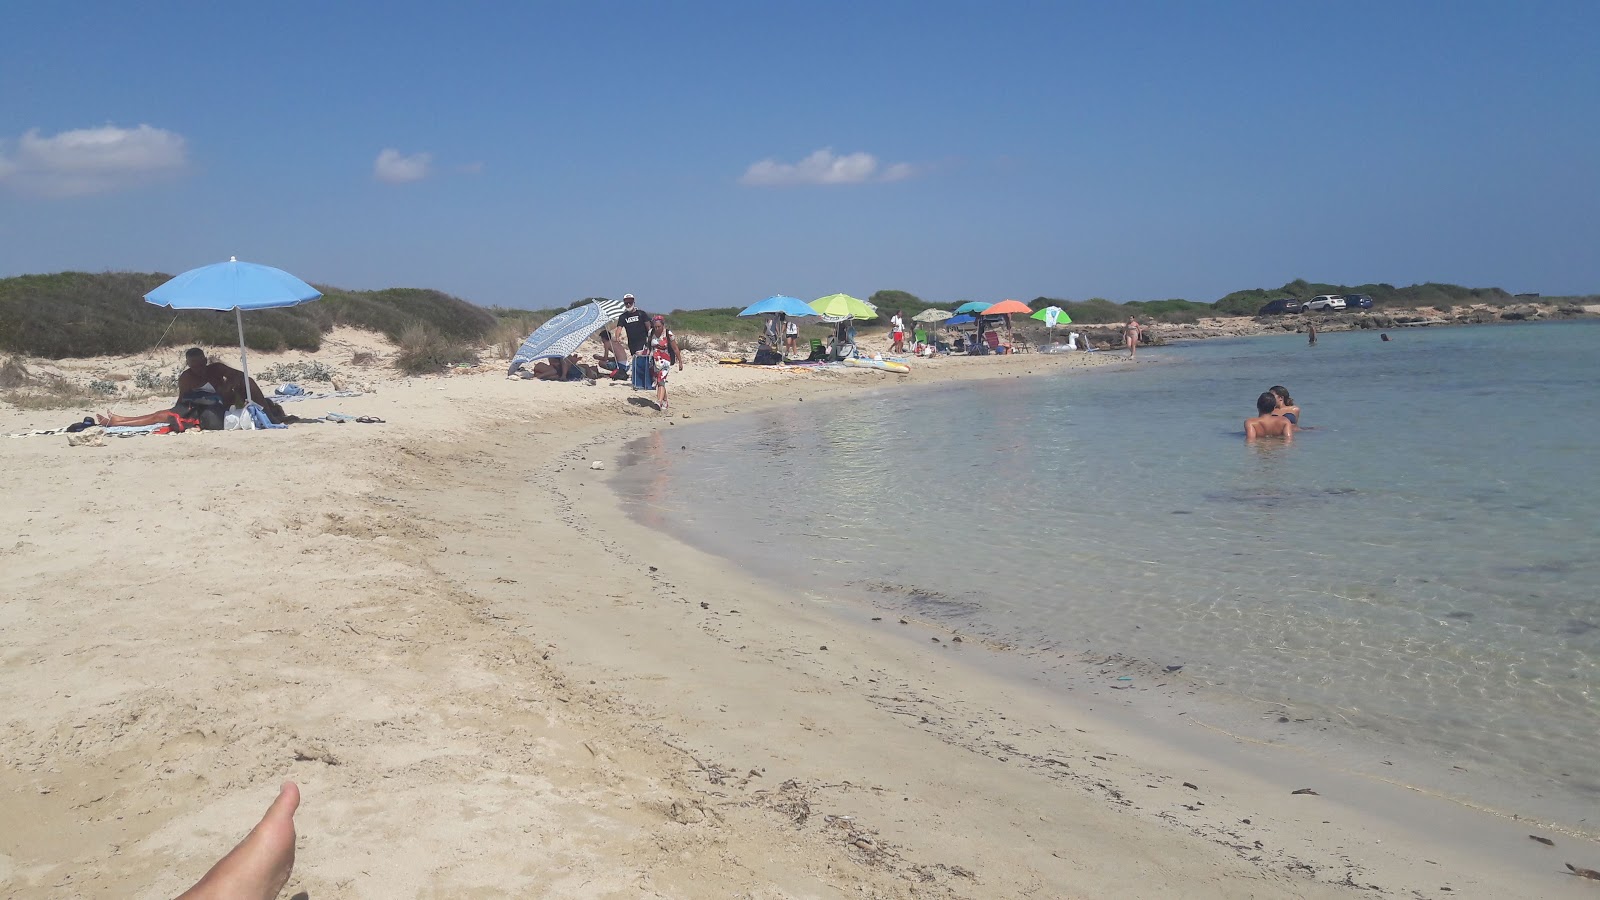 Foto de Spiaggia calette di salve localizado em área natural